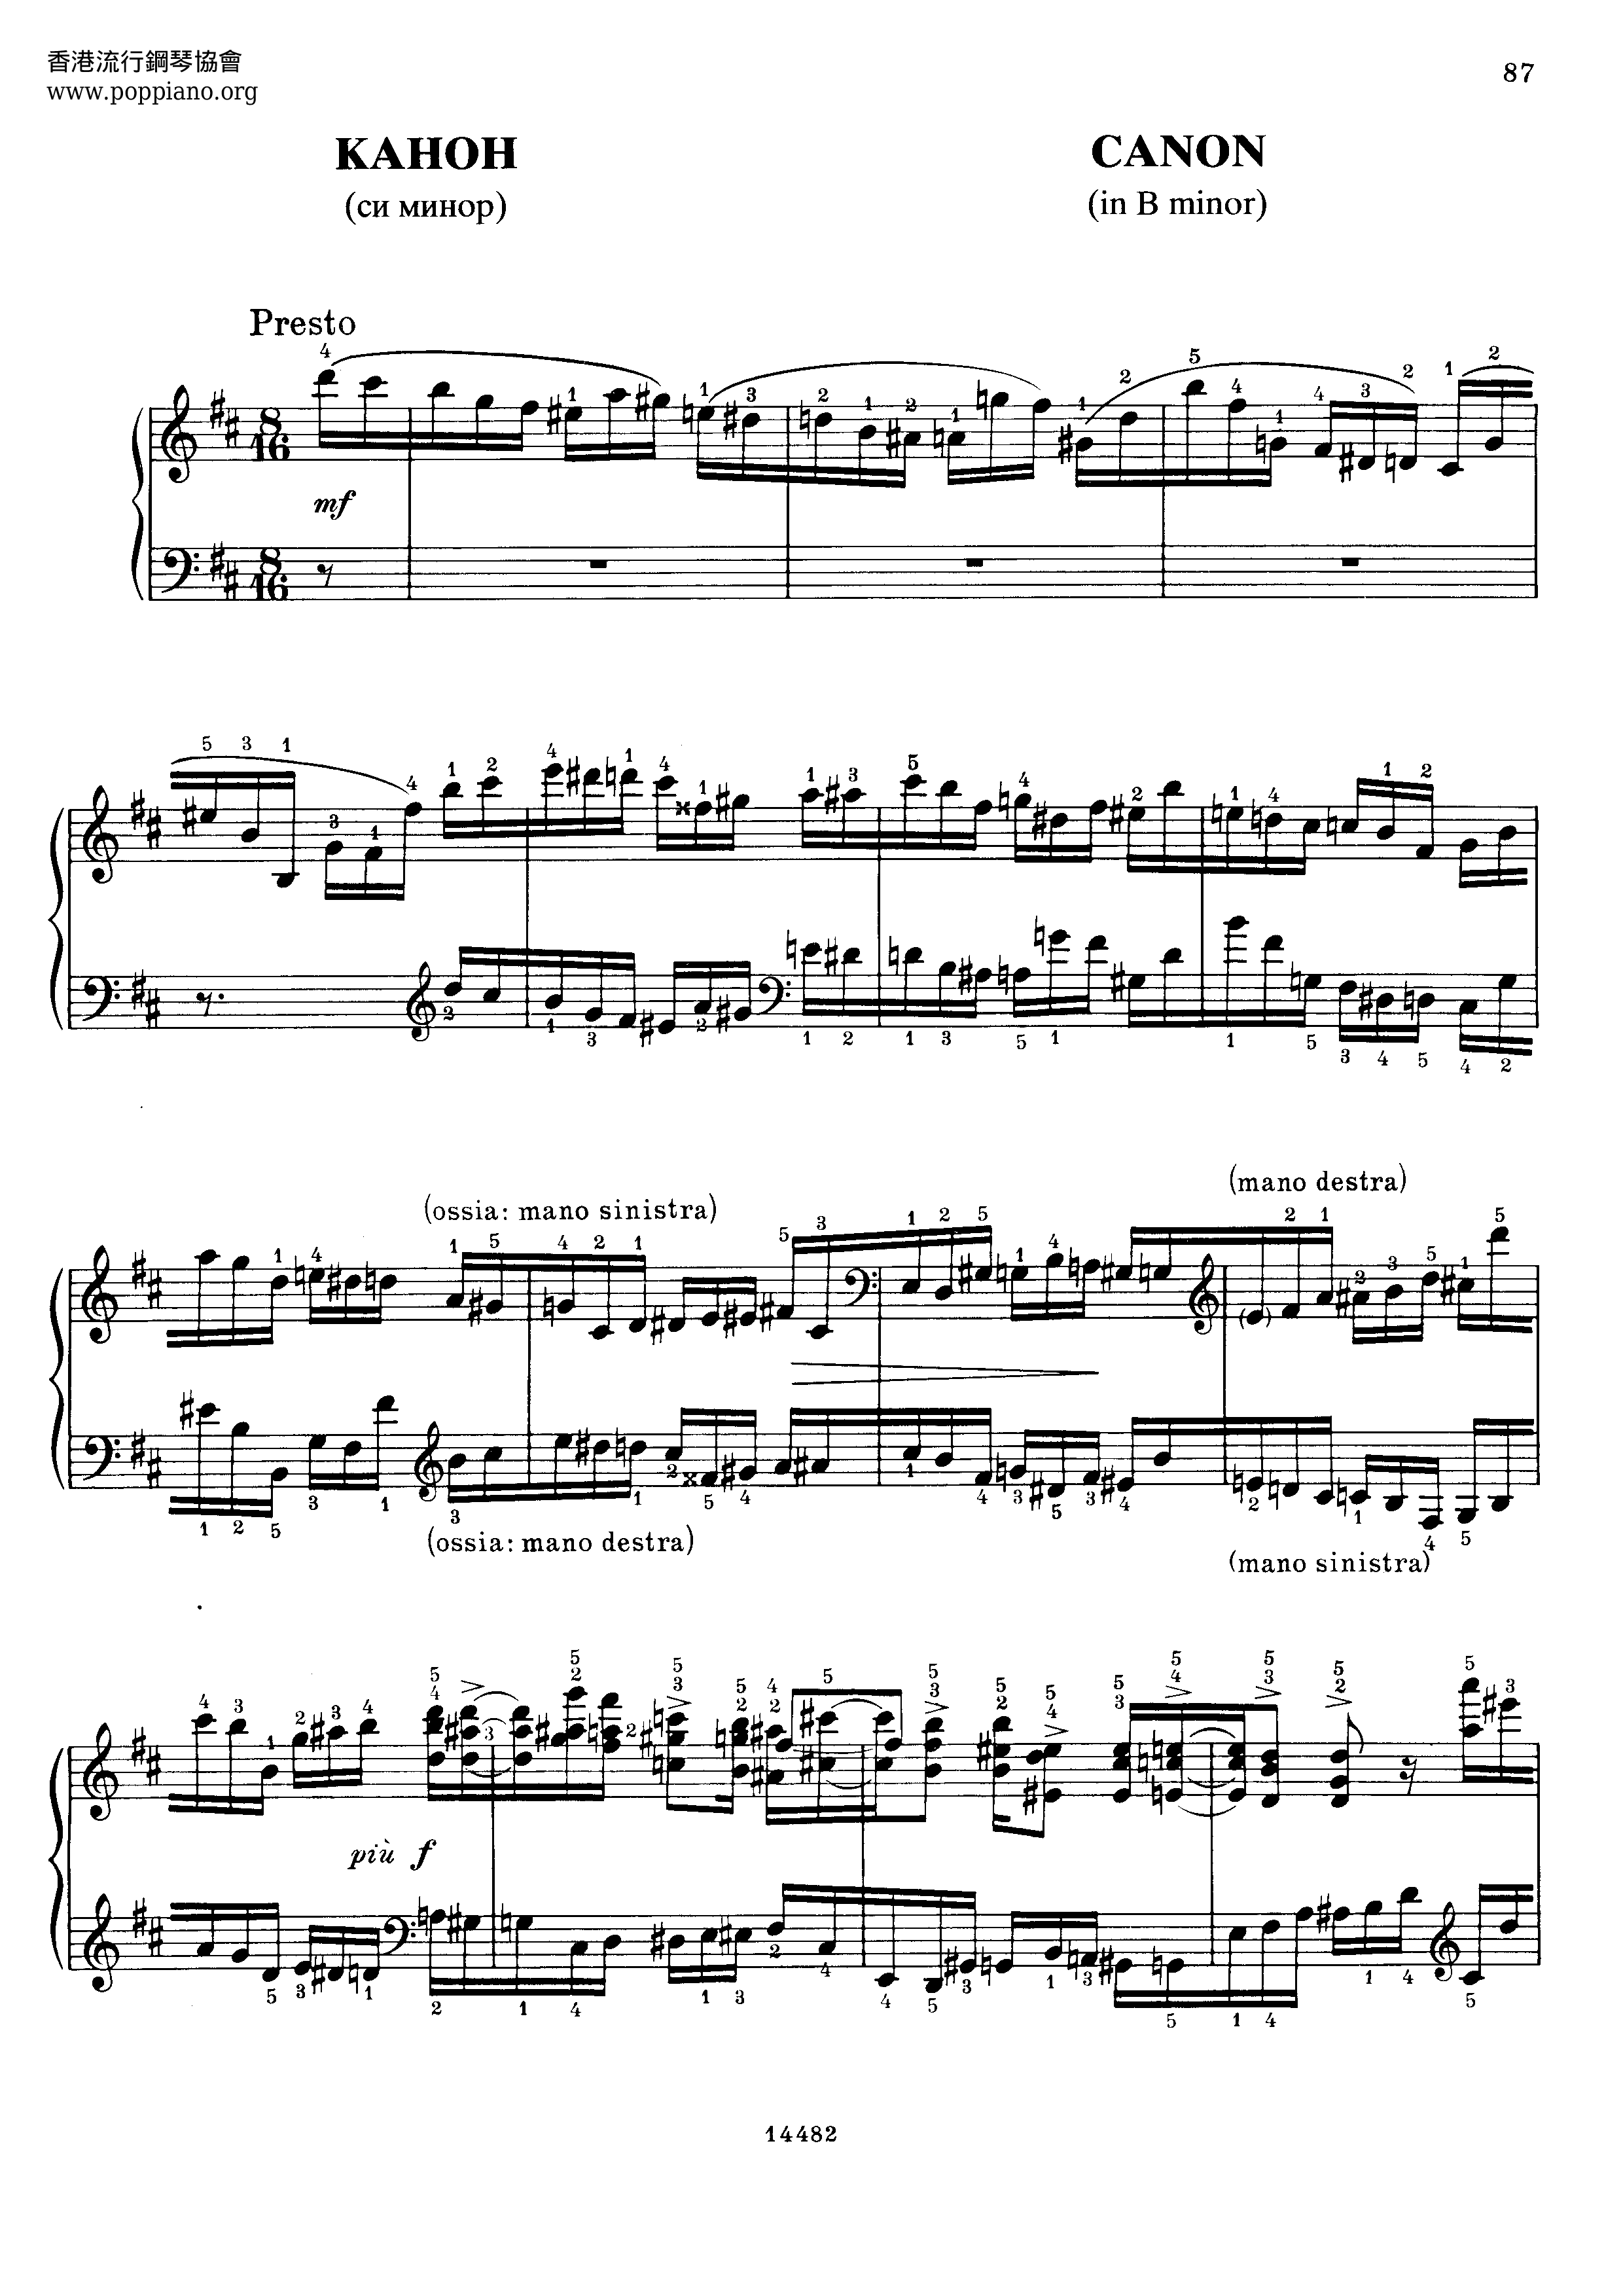 Canon In B Minor Score